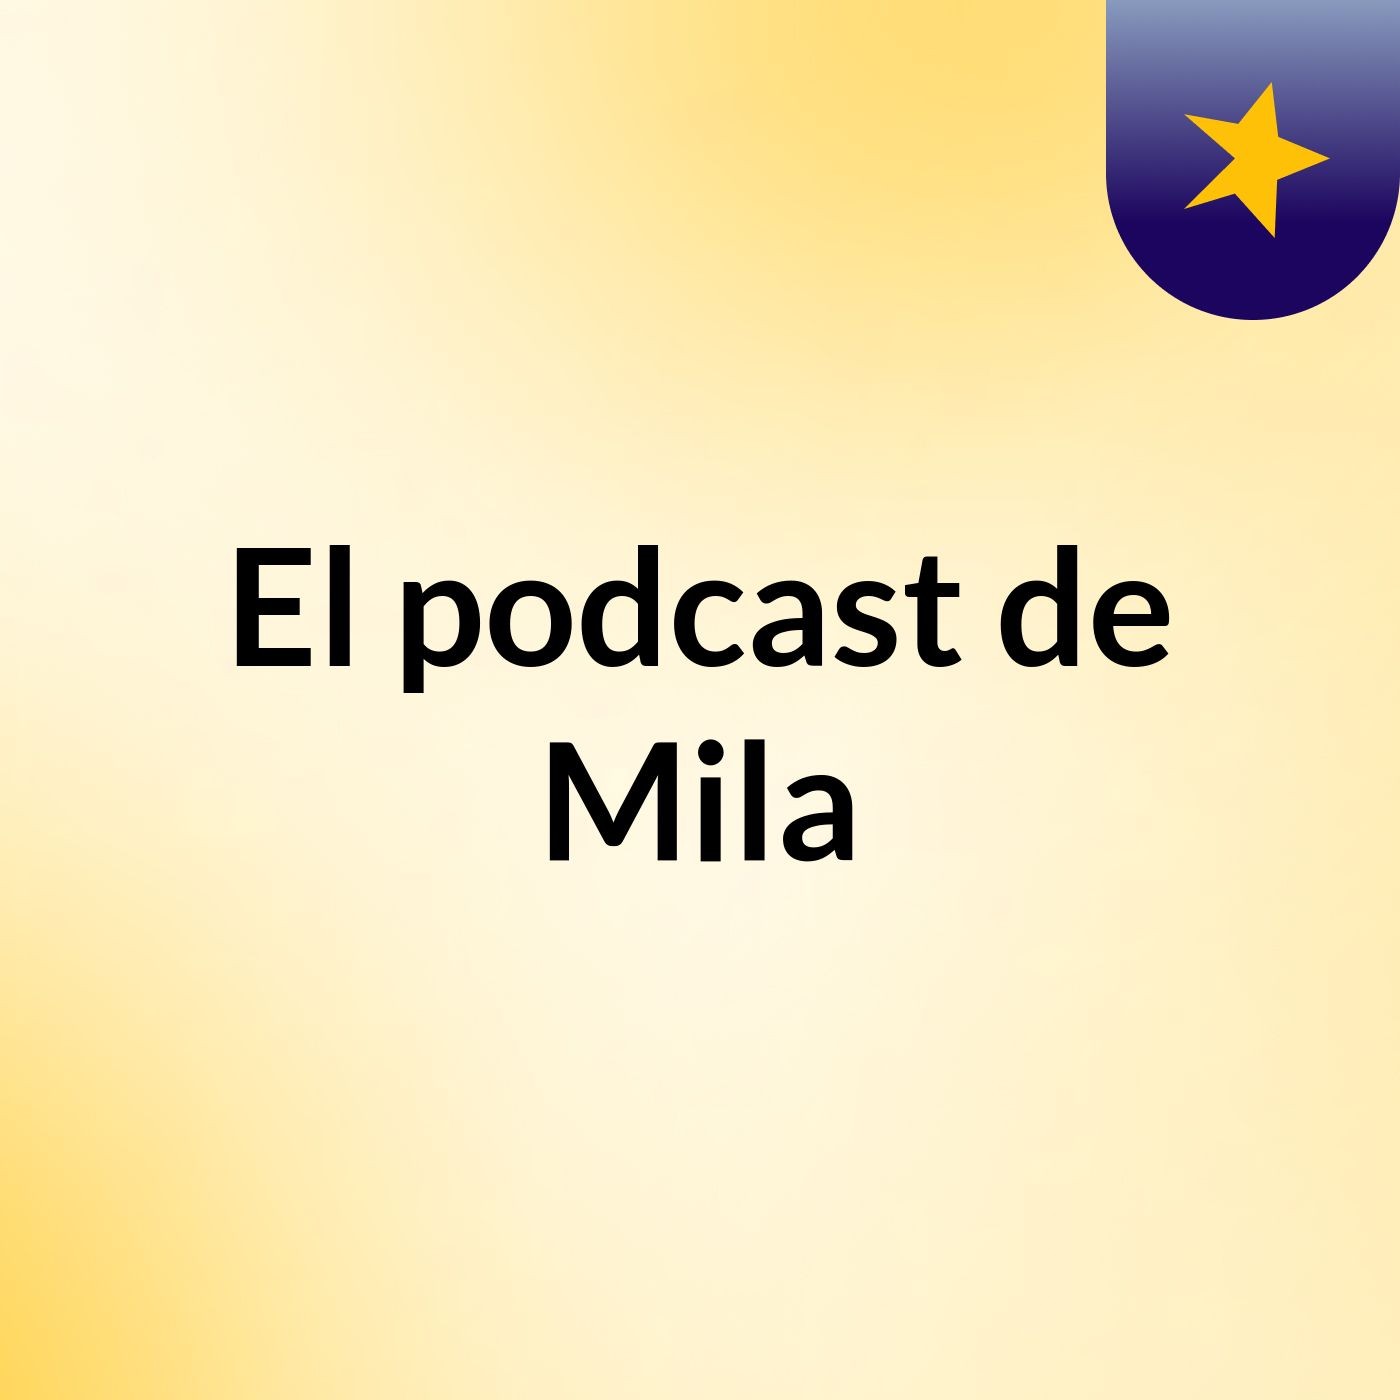 El podcast de Mila